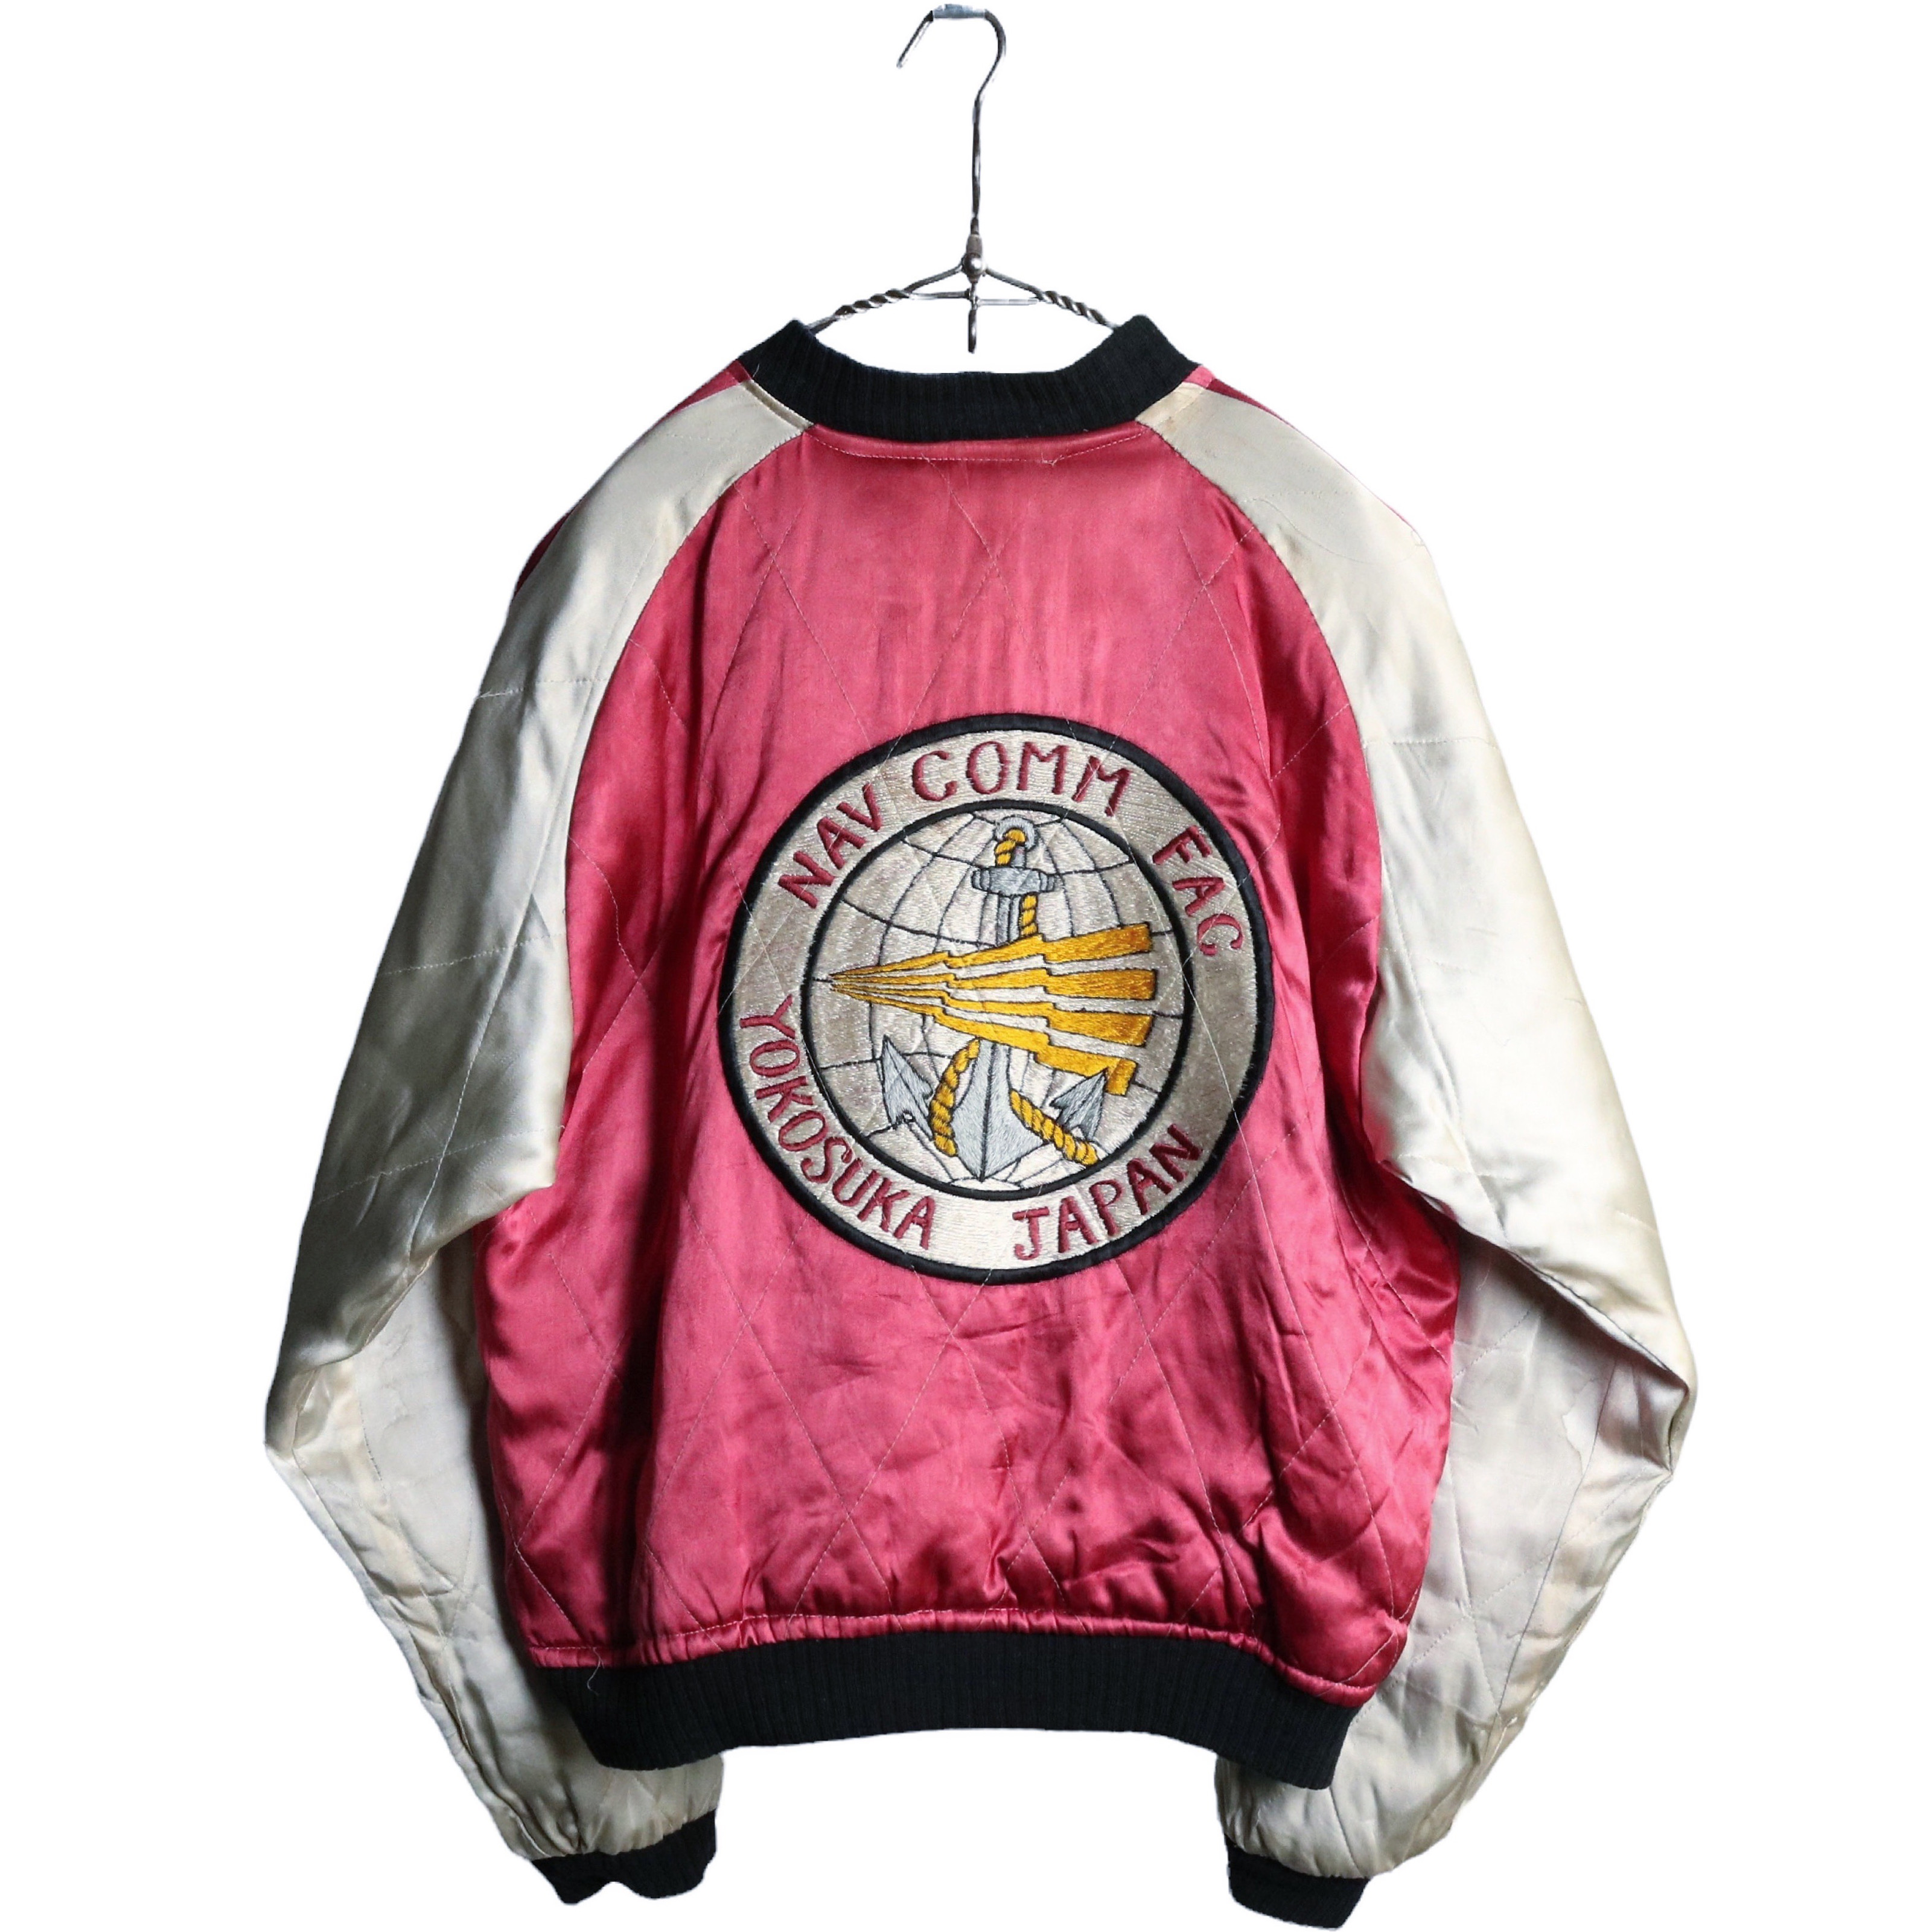 60s ヴィンテージ サテン スーベニアジャケット スカジャン NAVY刺繍 ブルー マスタード ピンク シルバー M程